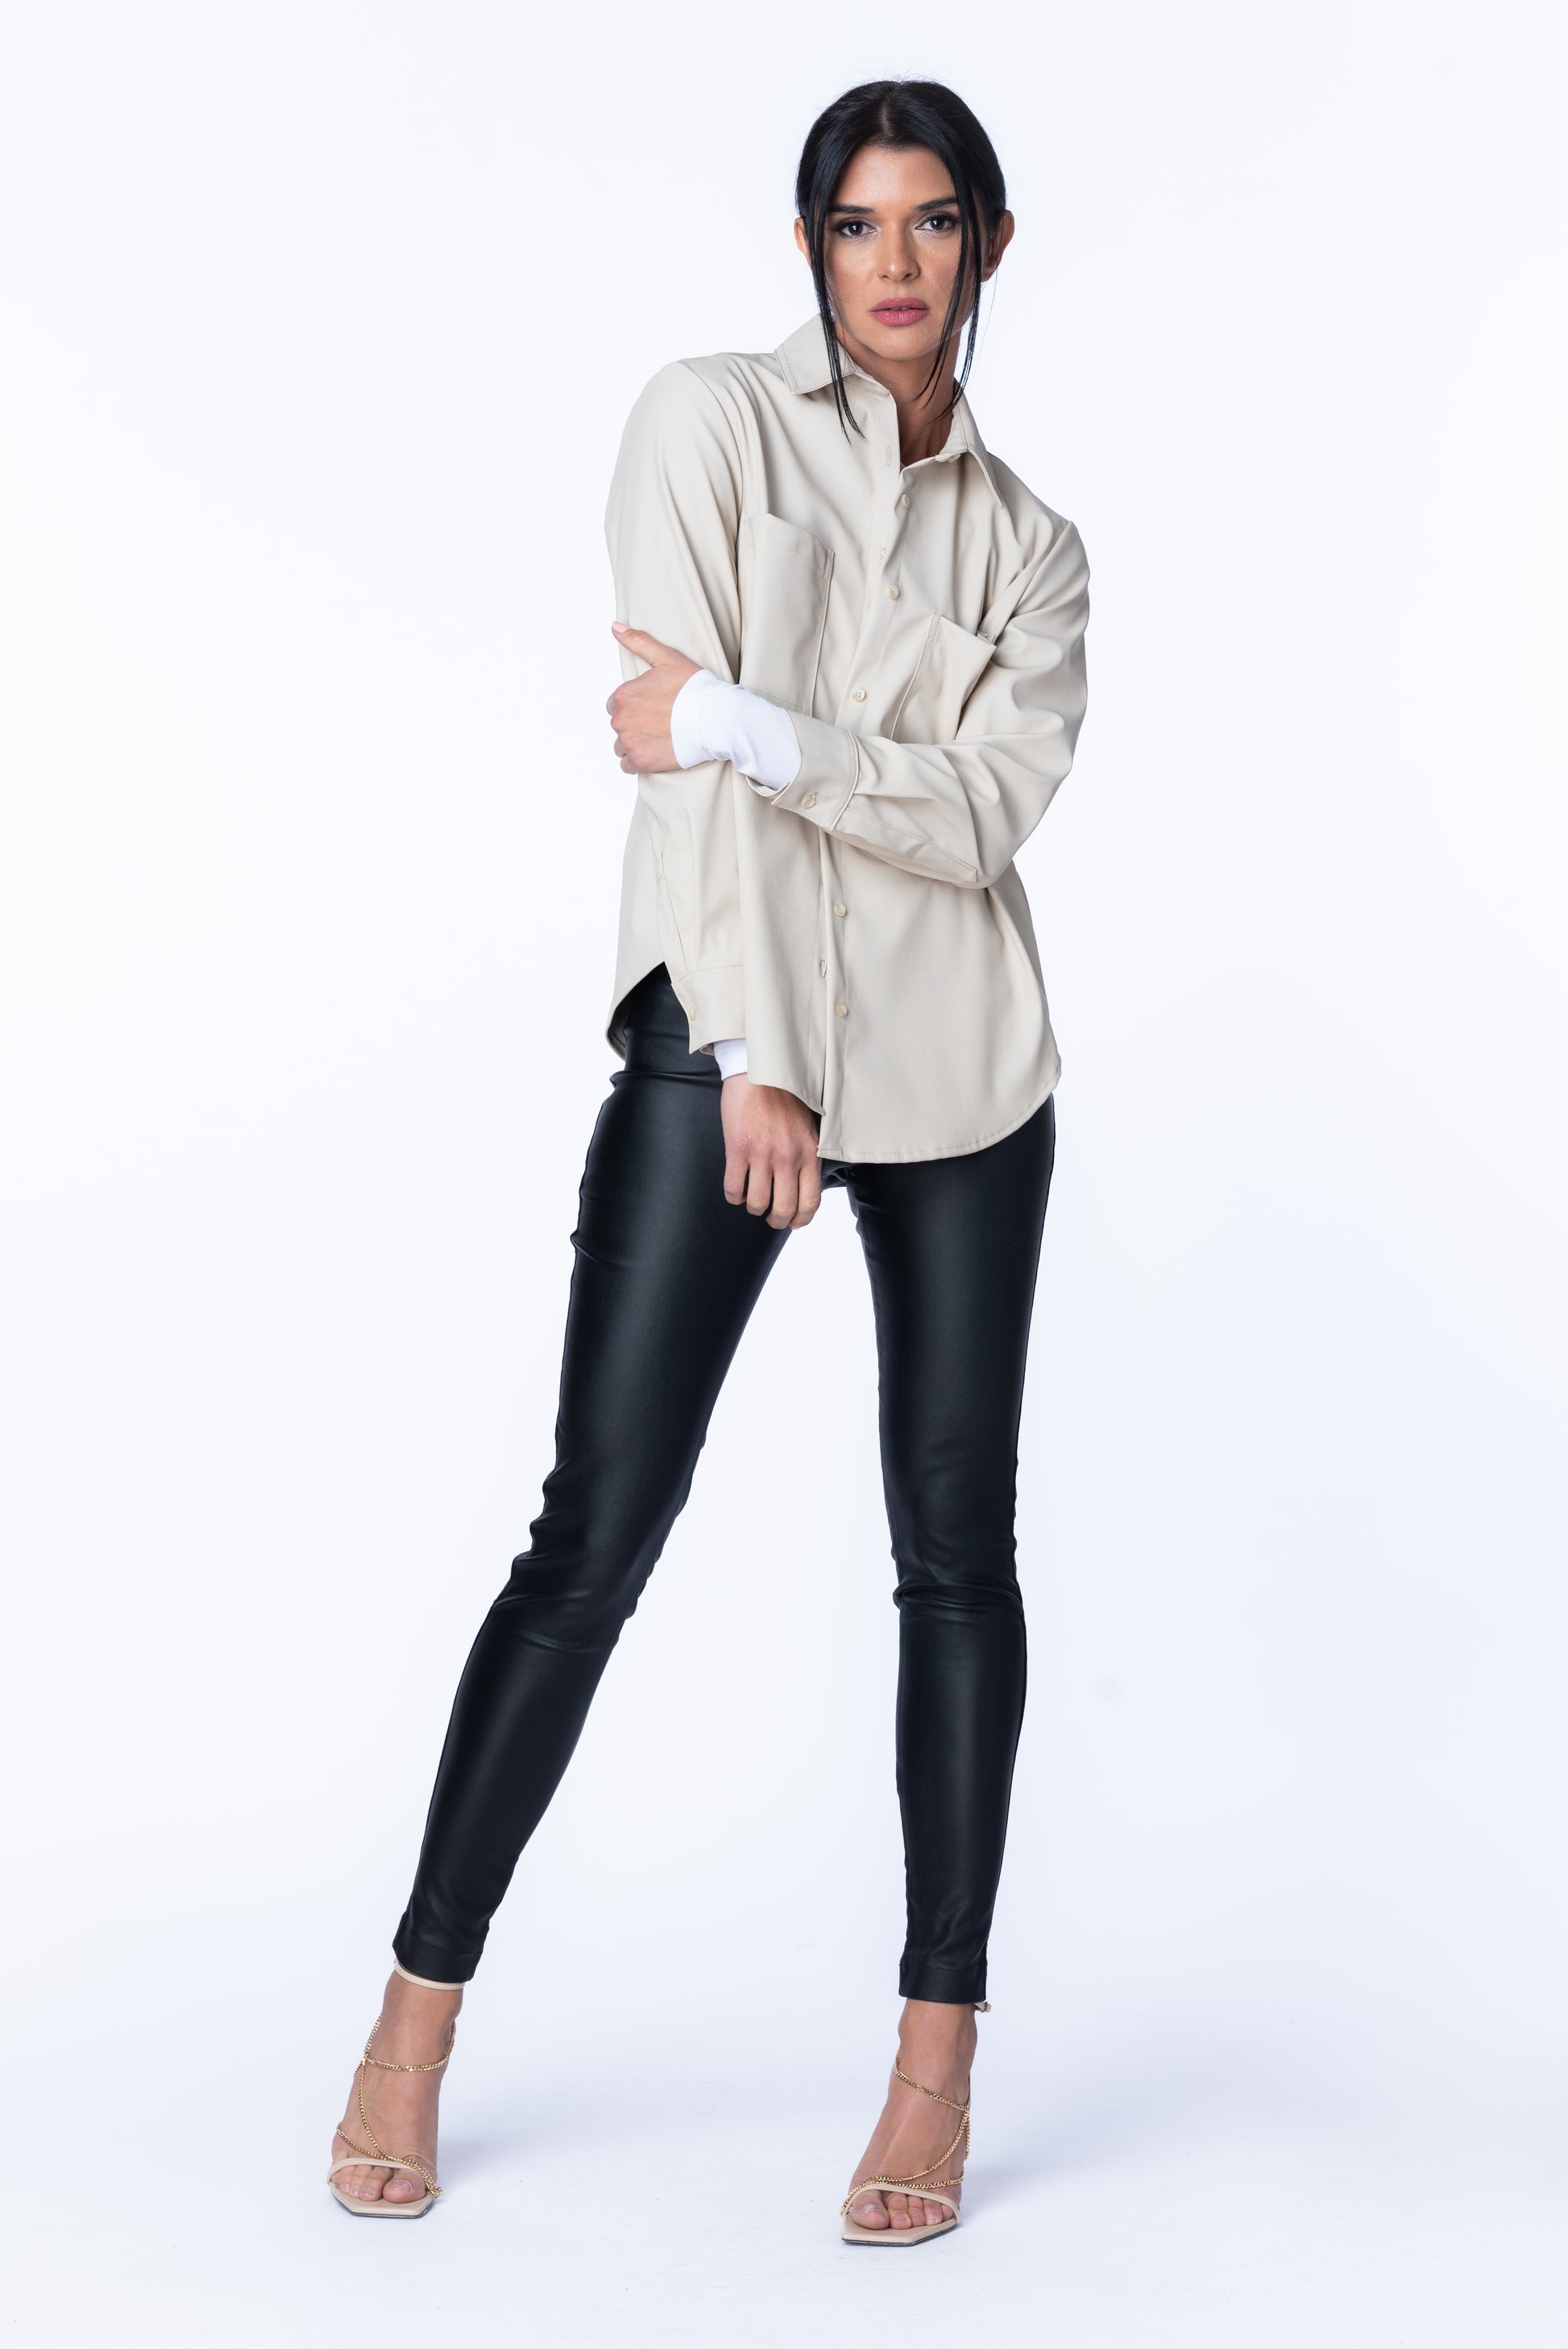 Sophie Vegan Leather Shacket - Crush Clothing